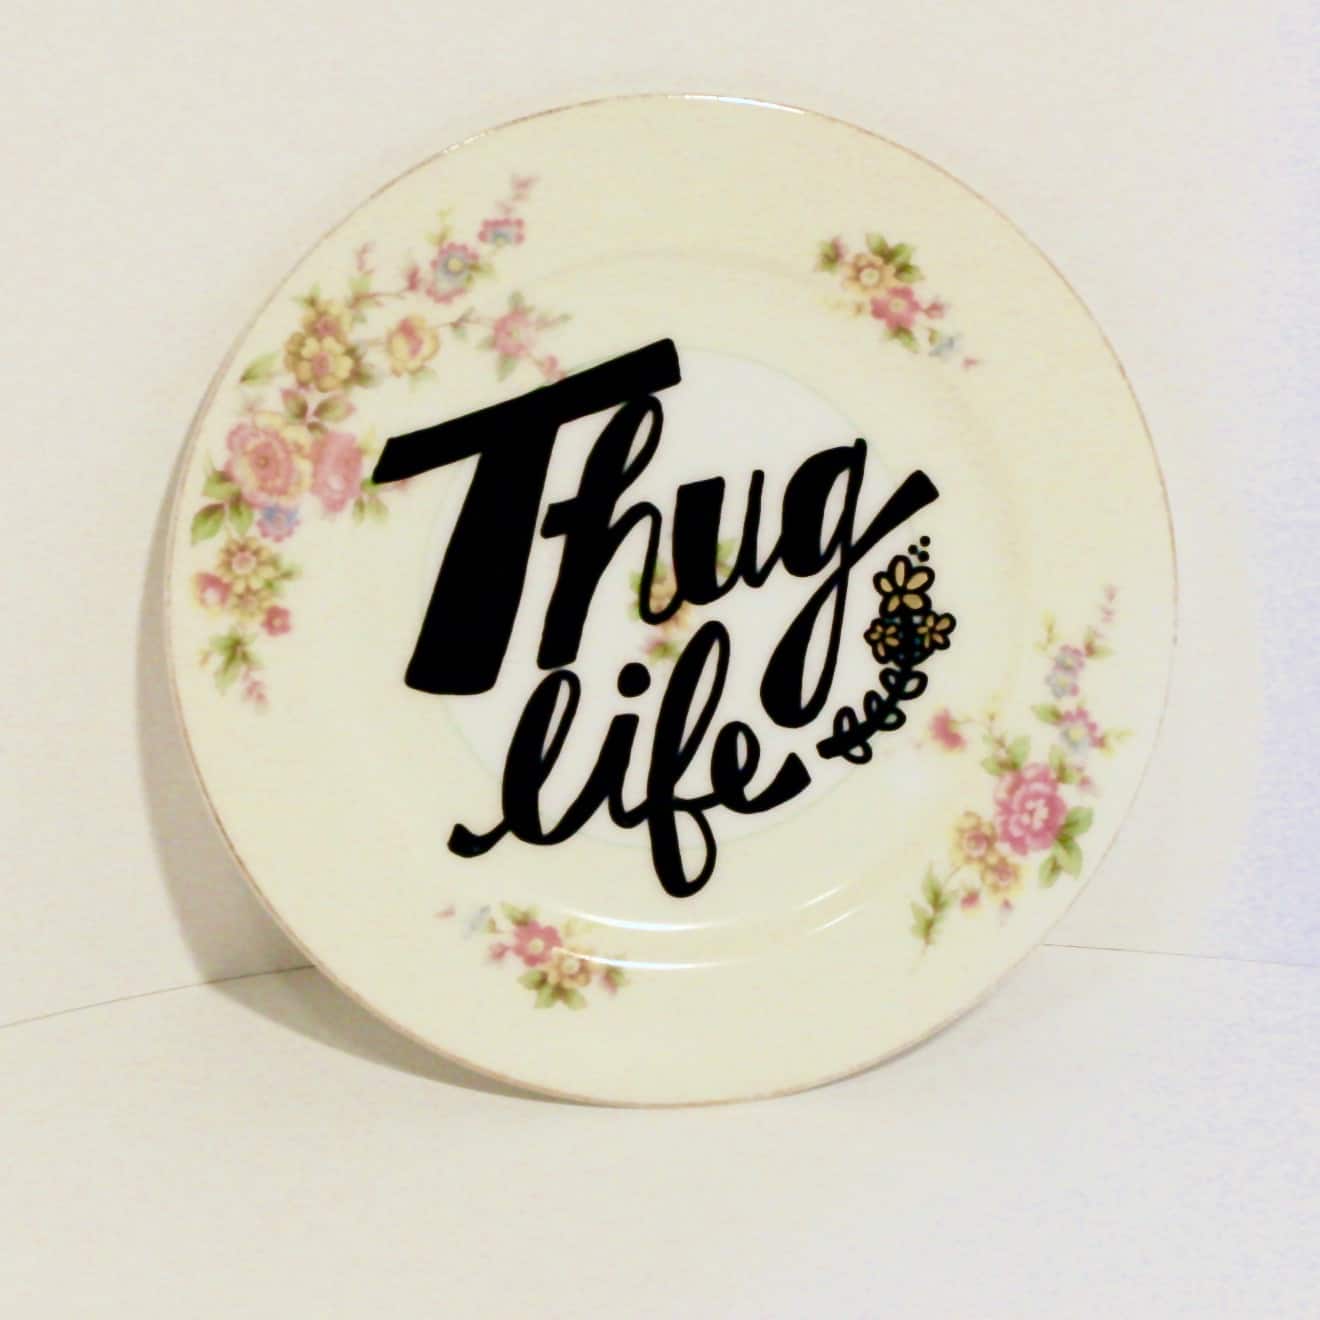 Thug life vintage plate DIY